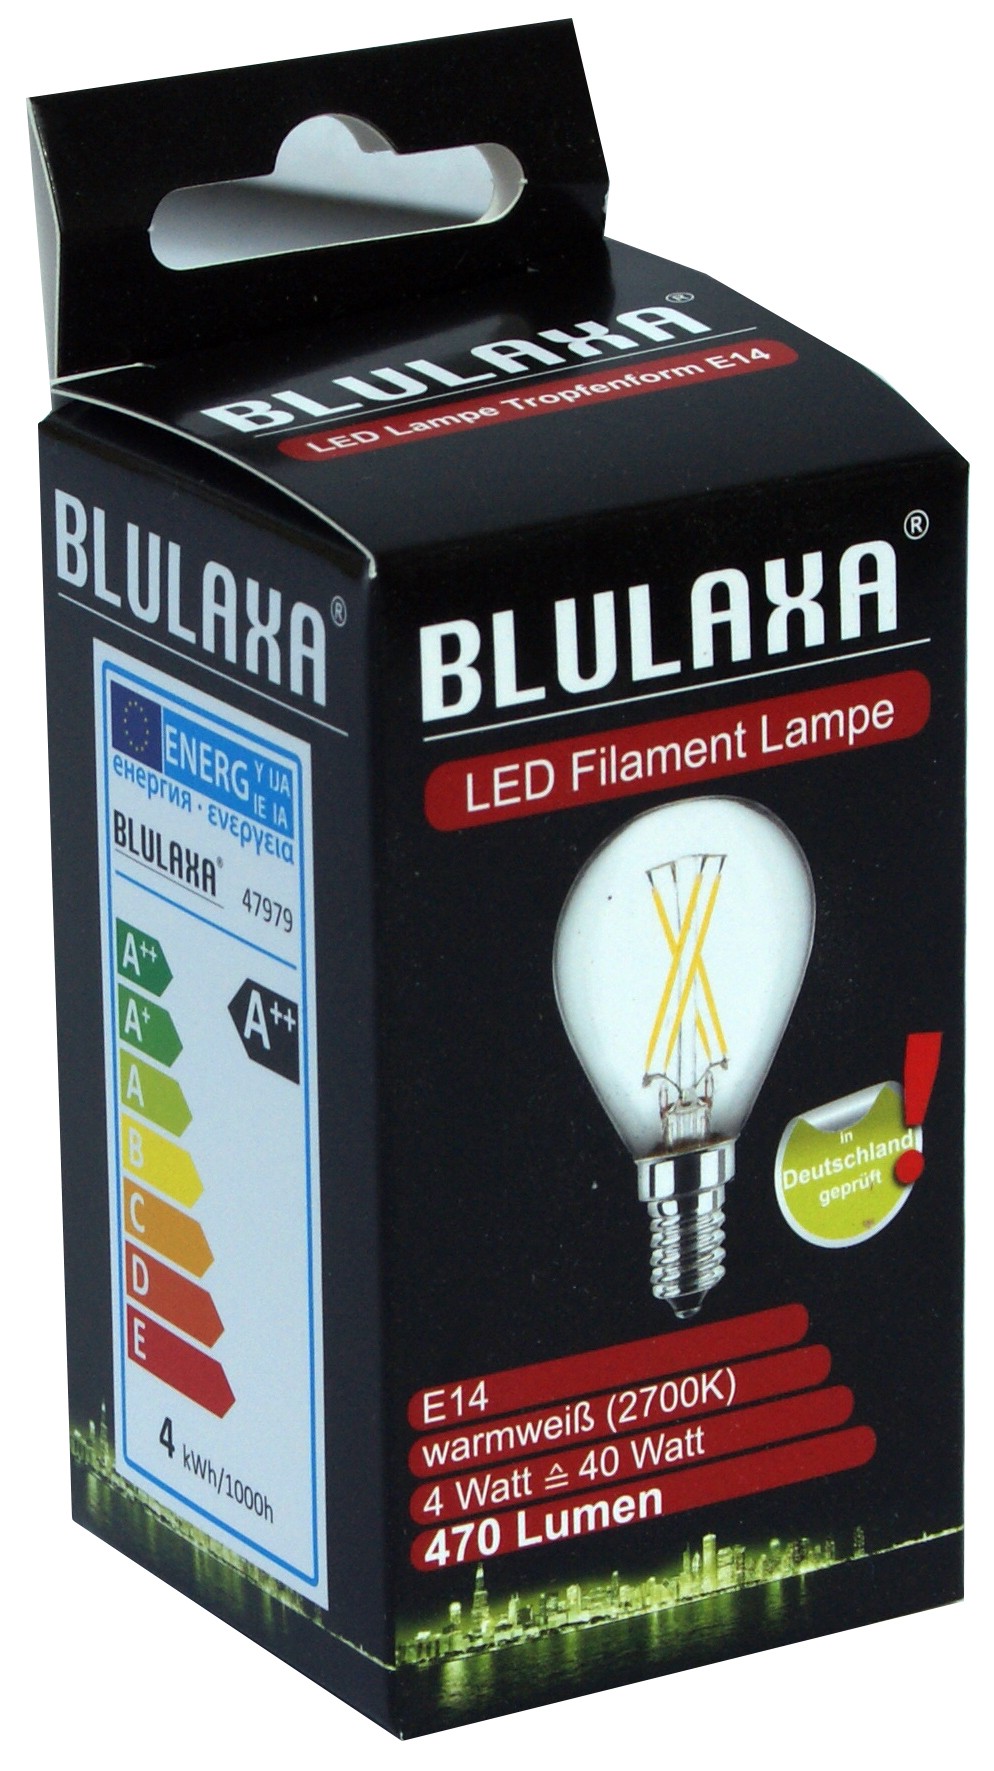 LED-Lampe 4 Watt, Blulaxa, E14